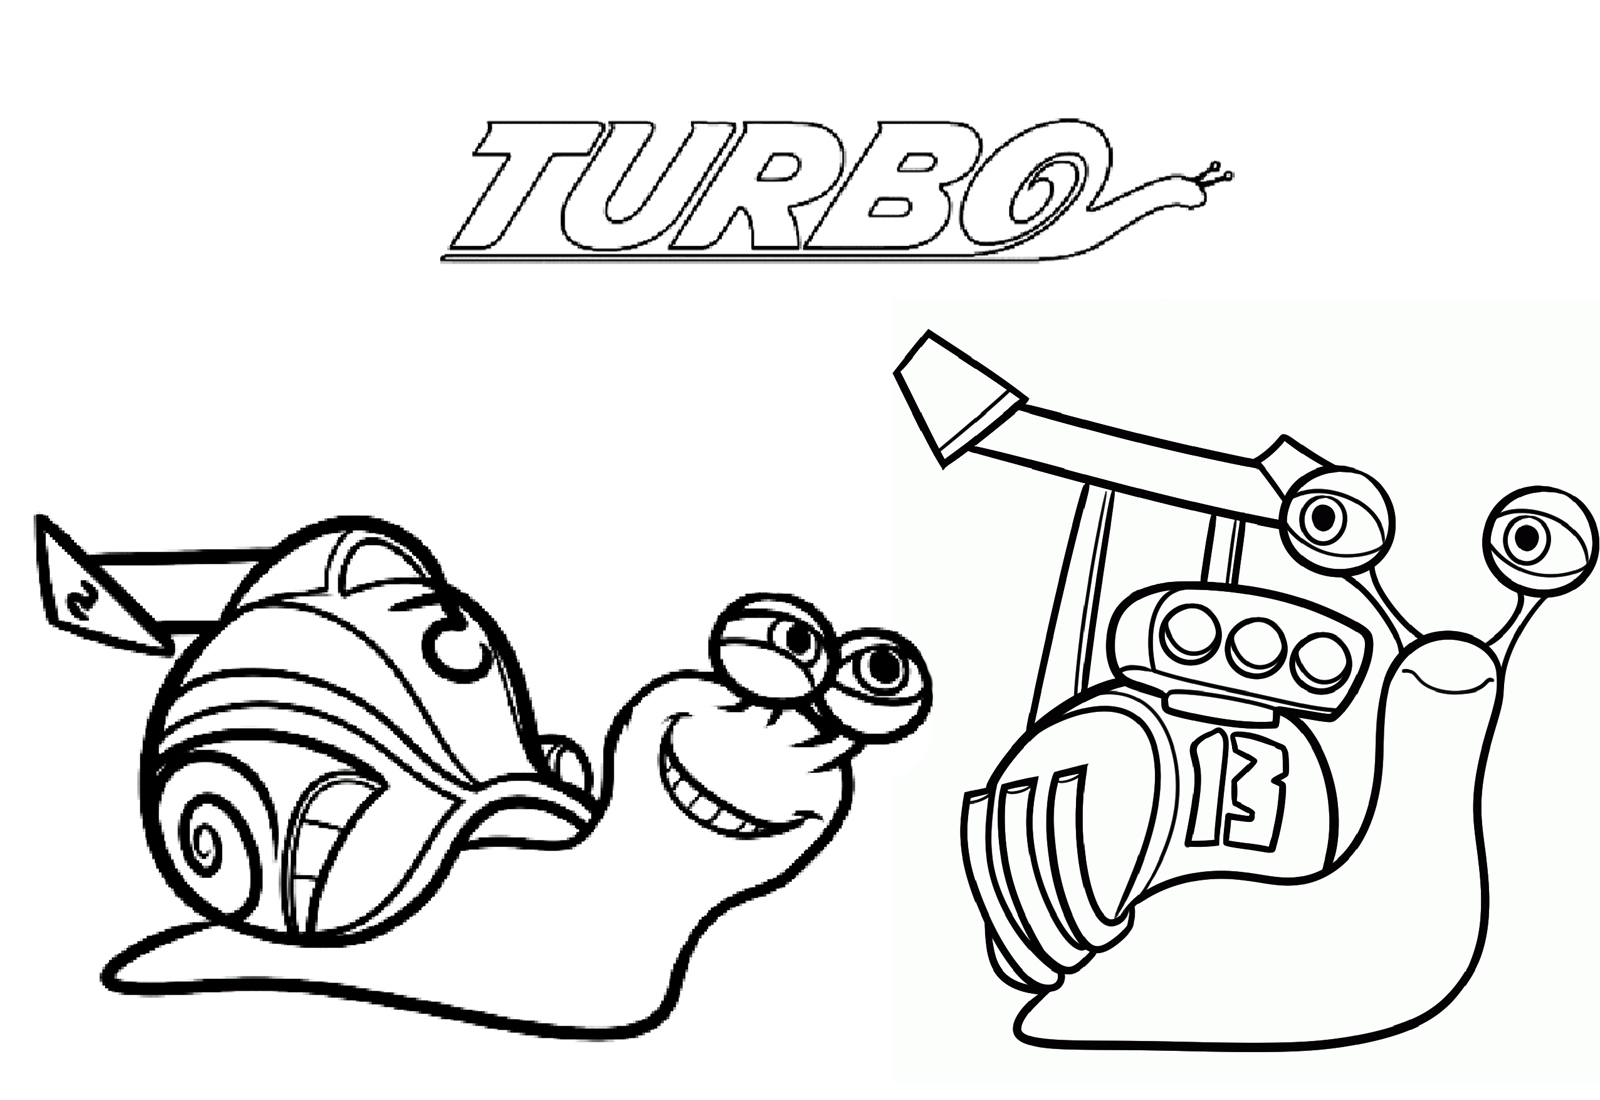 Coloriage Turbo L Escargot A Imprimer | Imprimer et Obtenir une Coloriage Gratuit Ici